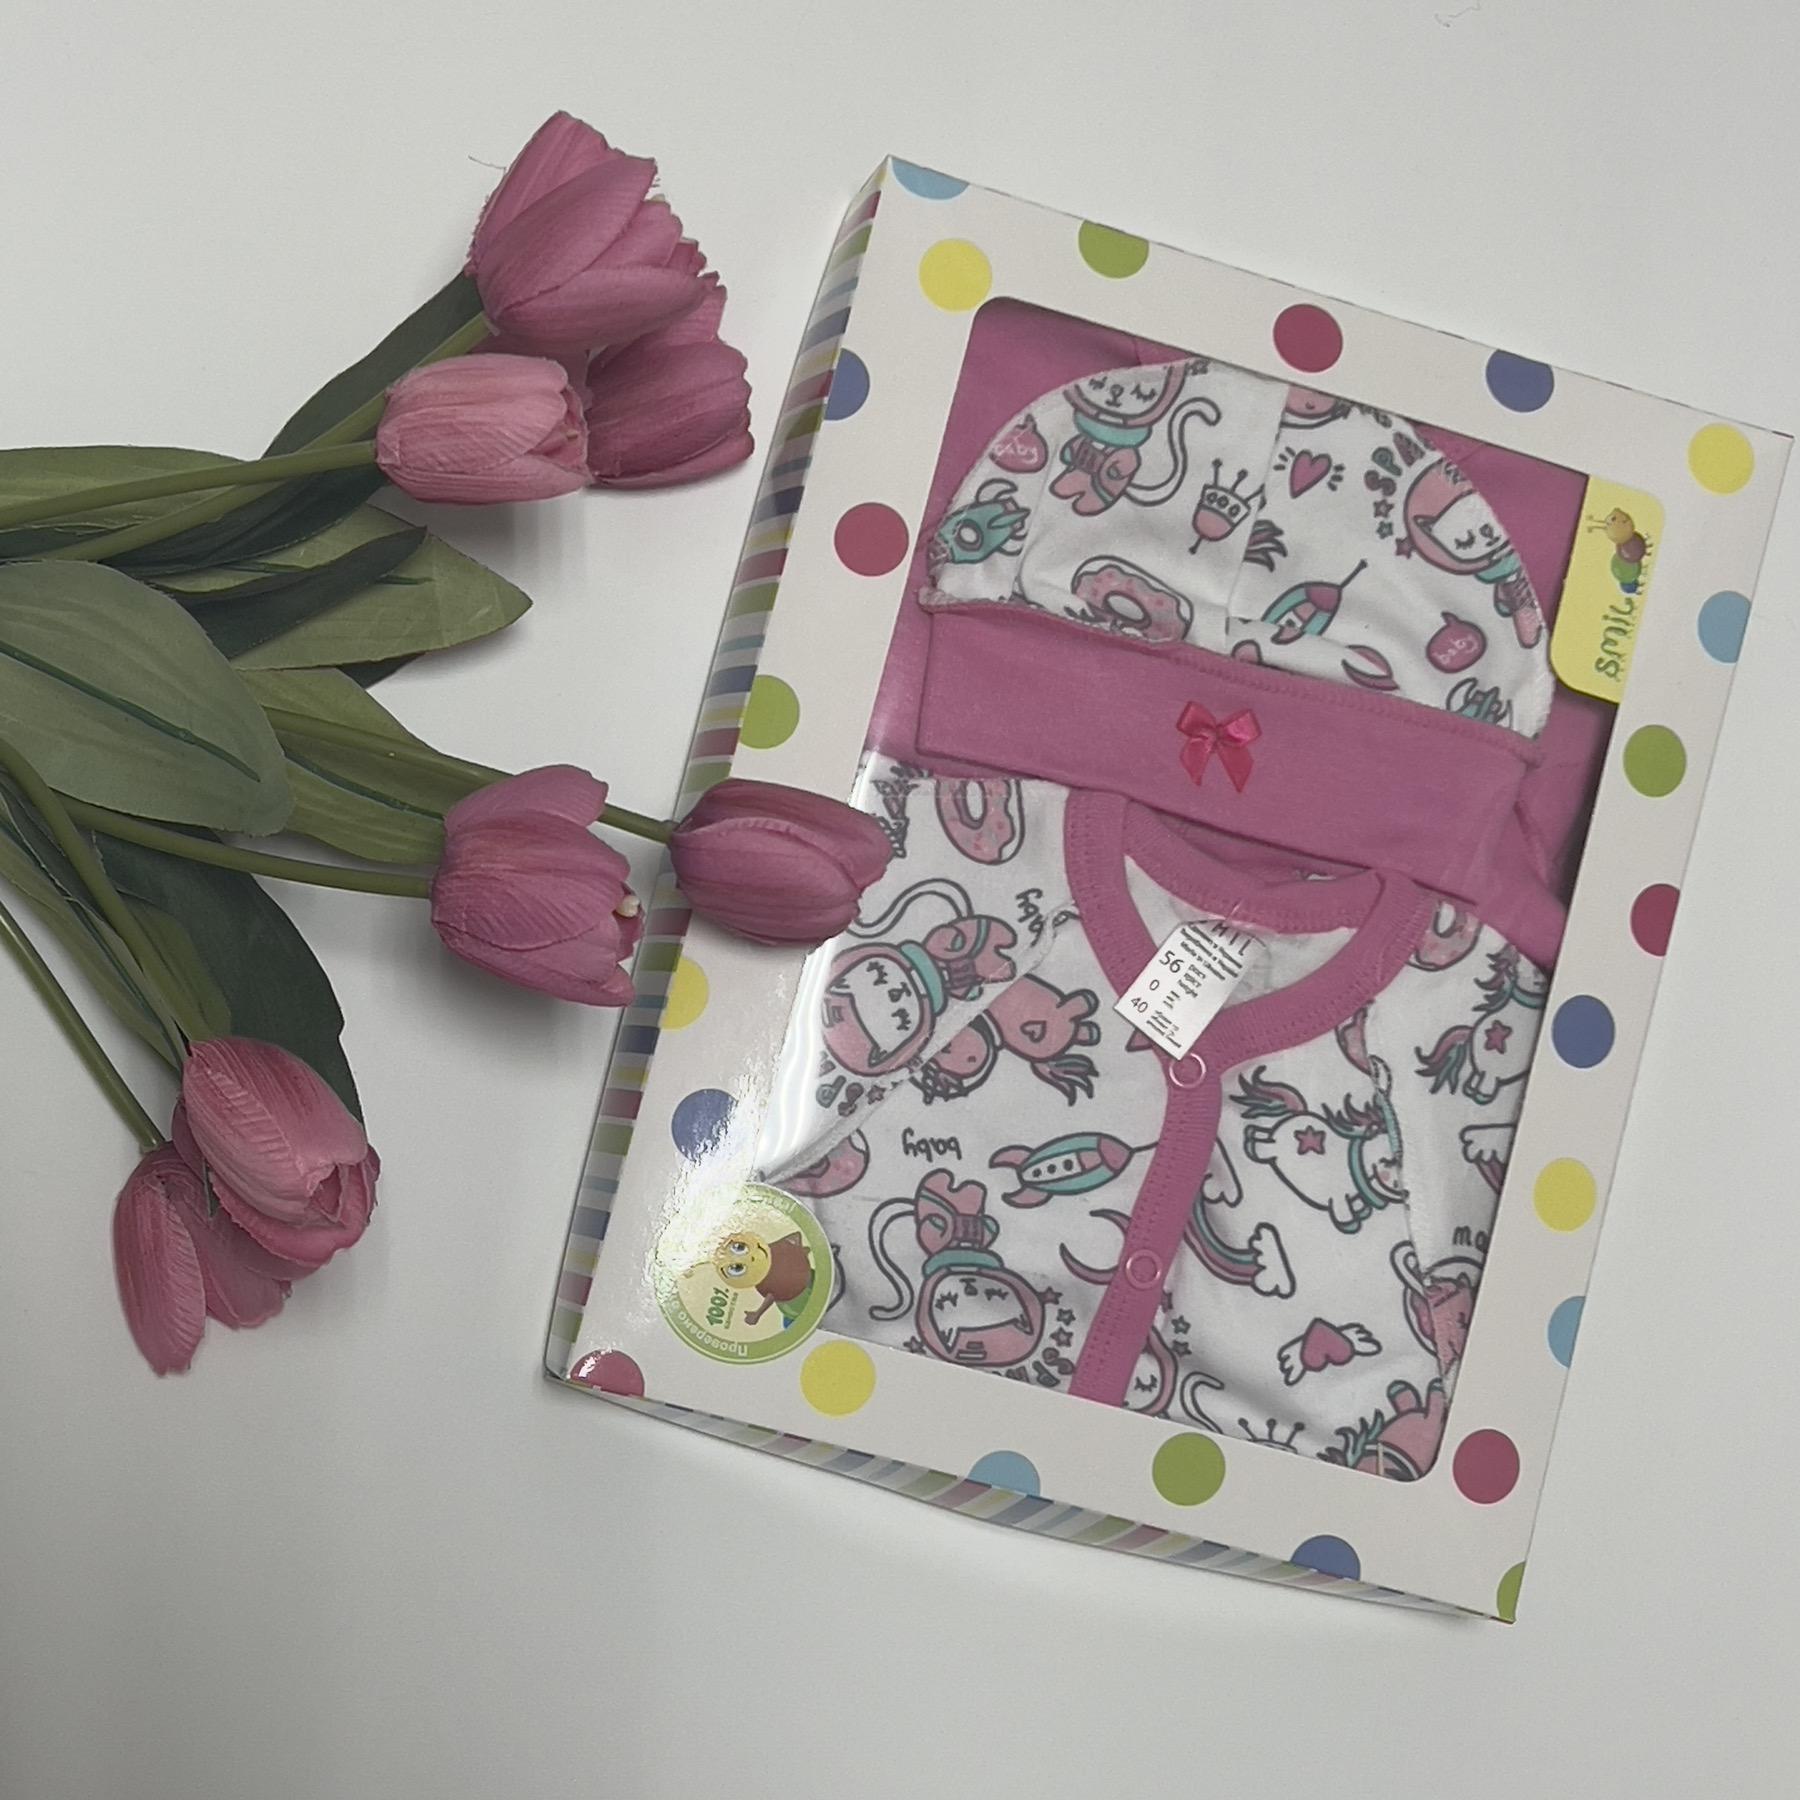 Комплект одягу для новонародженої дівчинки, 4 предмети, рожево-білий (115488), Smil (Смил)